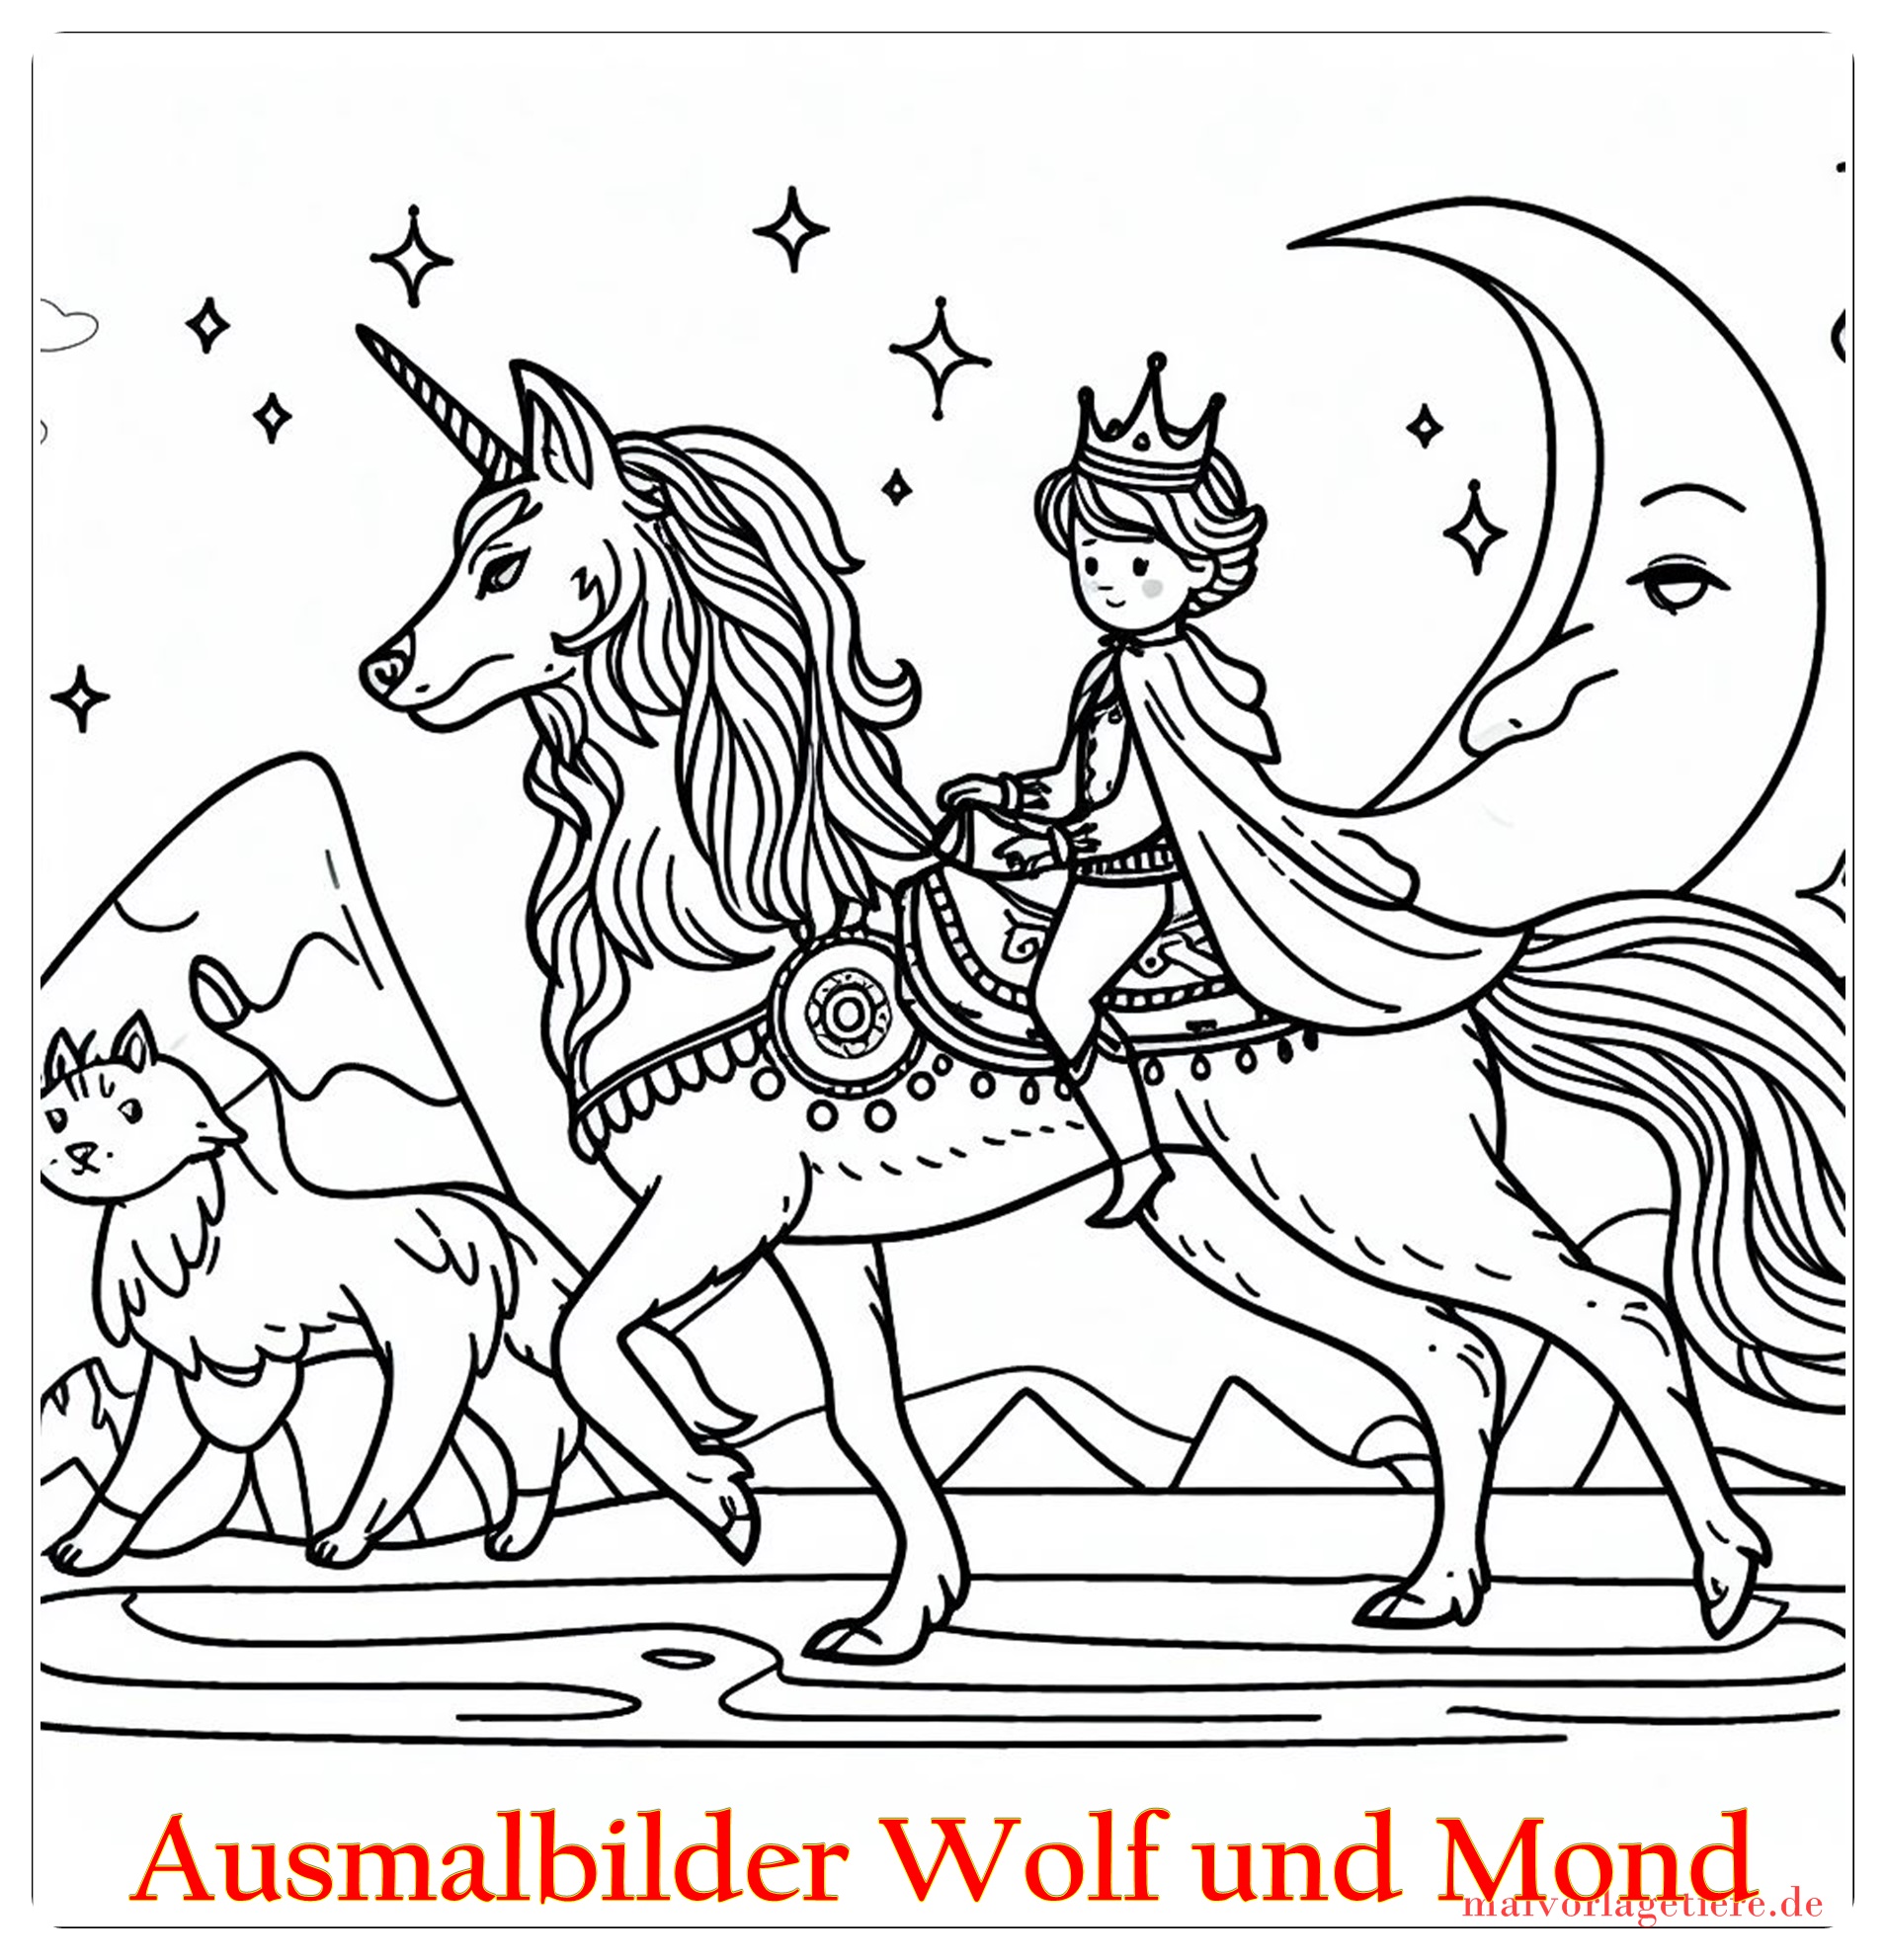 Ausmalbilder Wolf und Mond 04 by malvorlagetiere